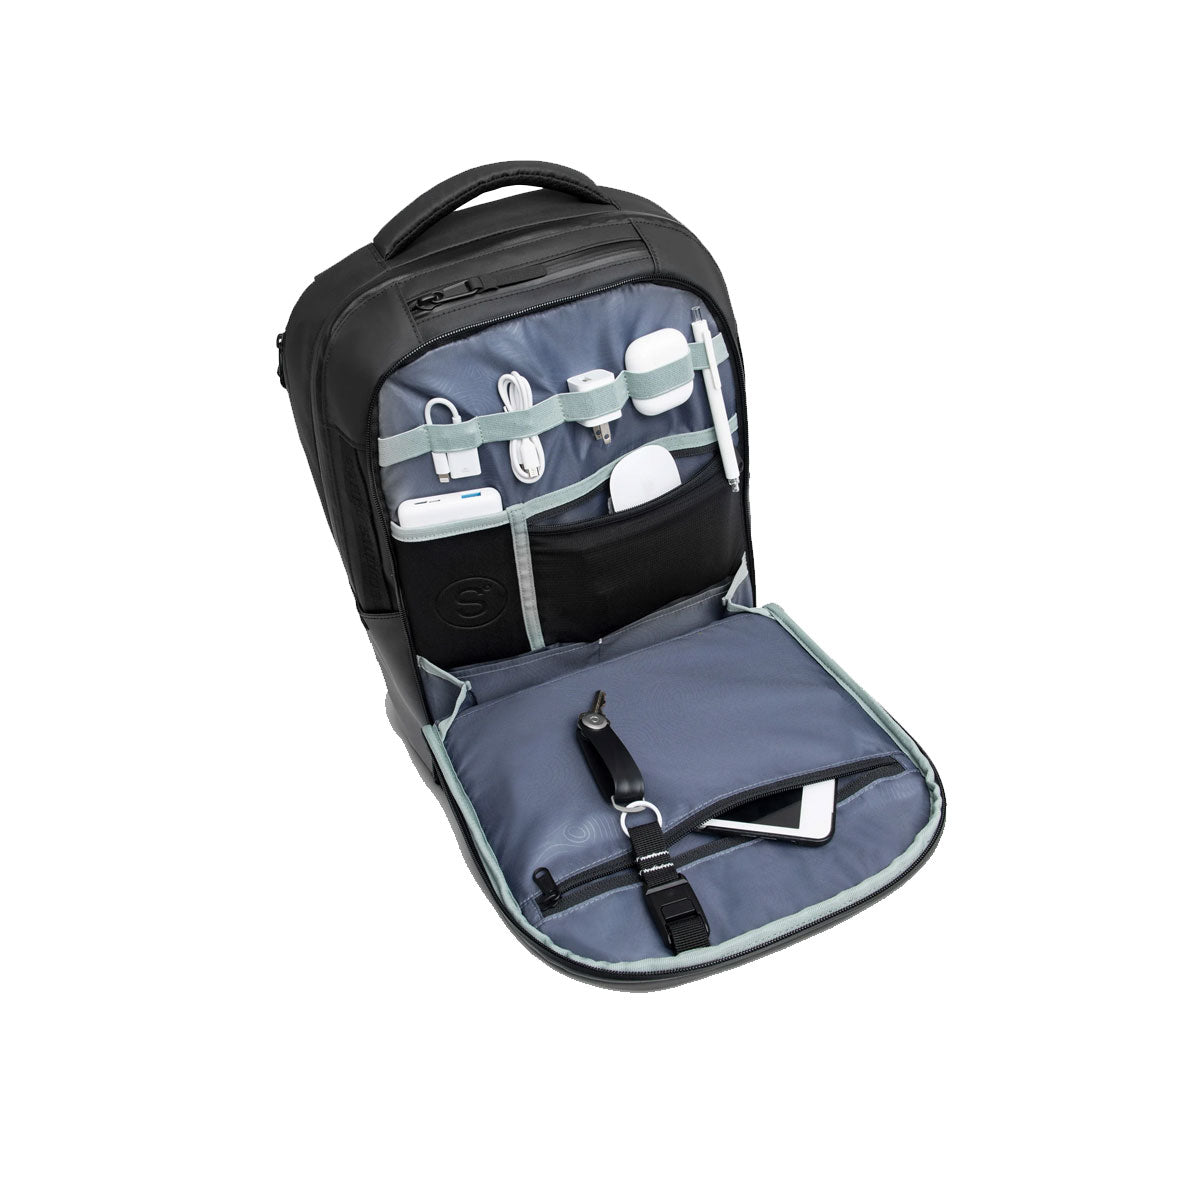 [PO] Sympl : Travel Backpack 35L